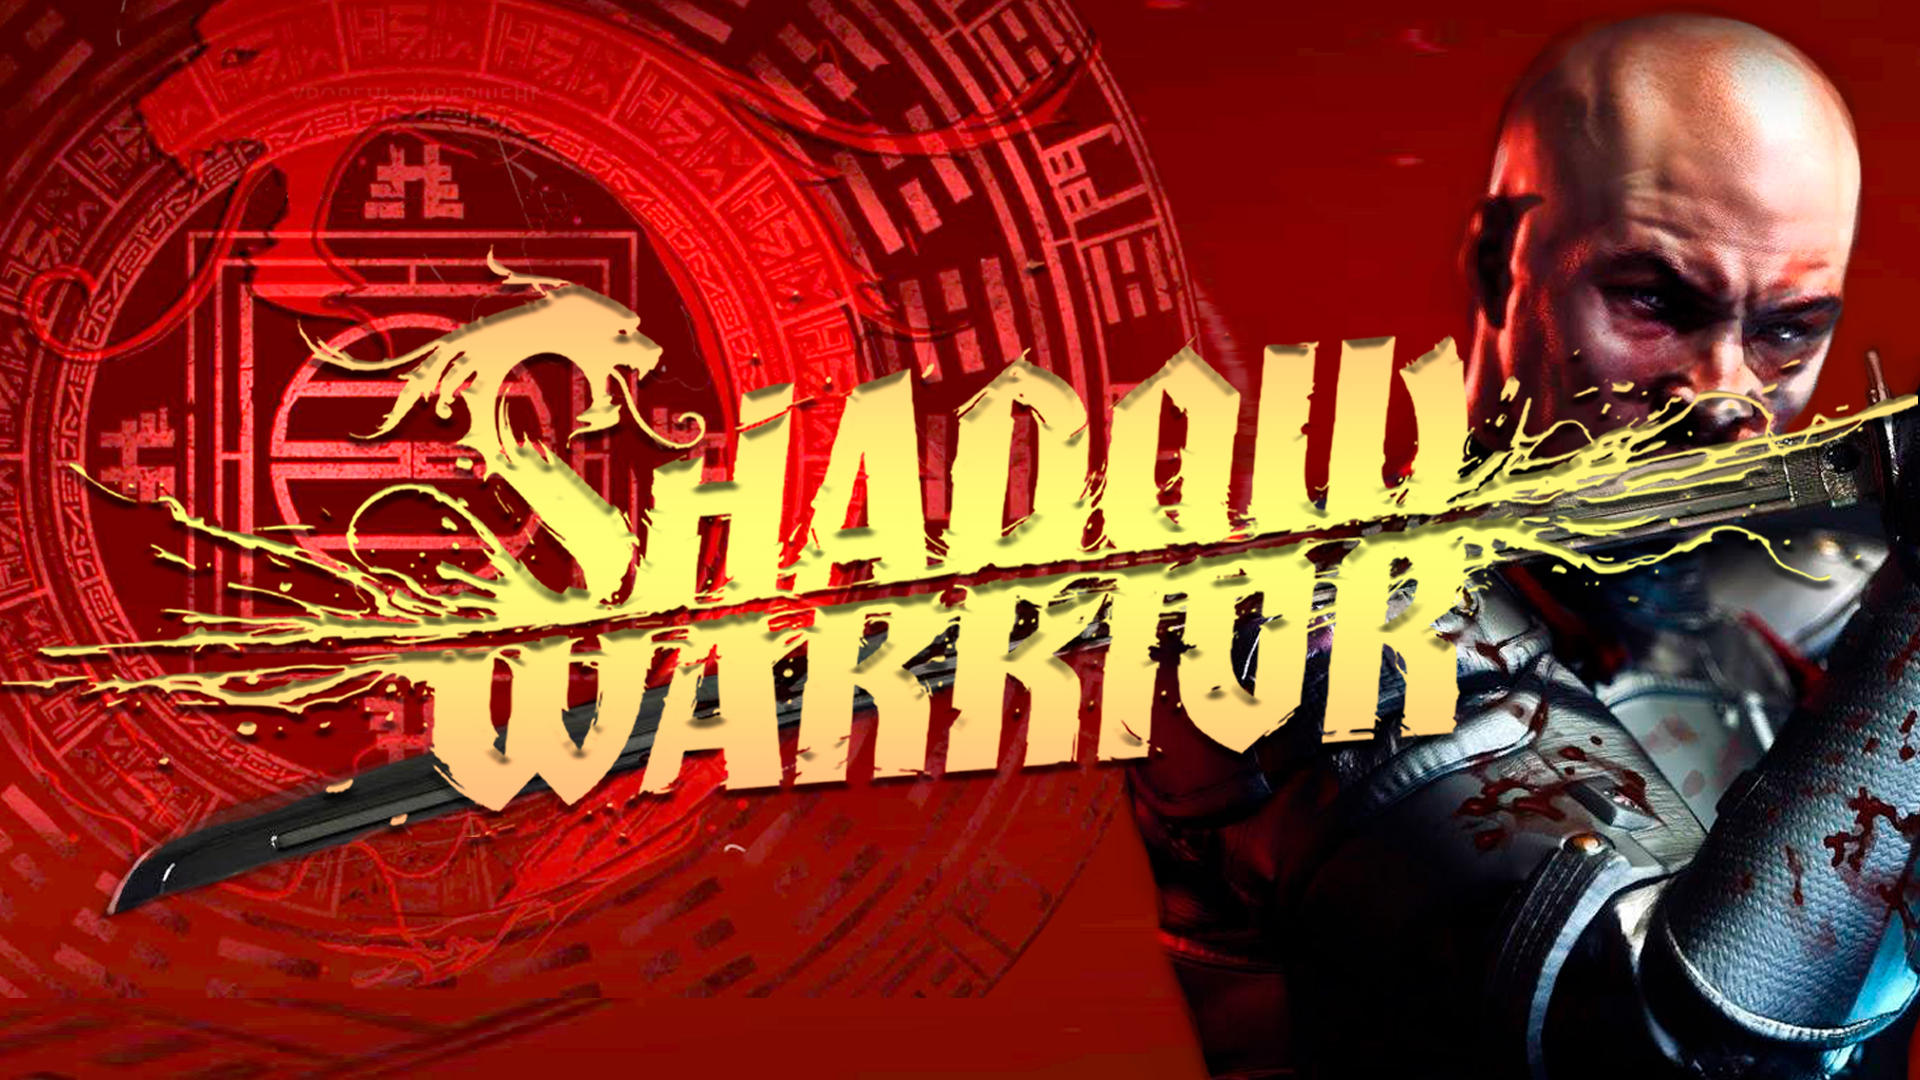 Shadow Warrior 2013 № 49